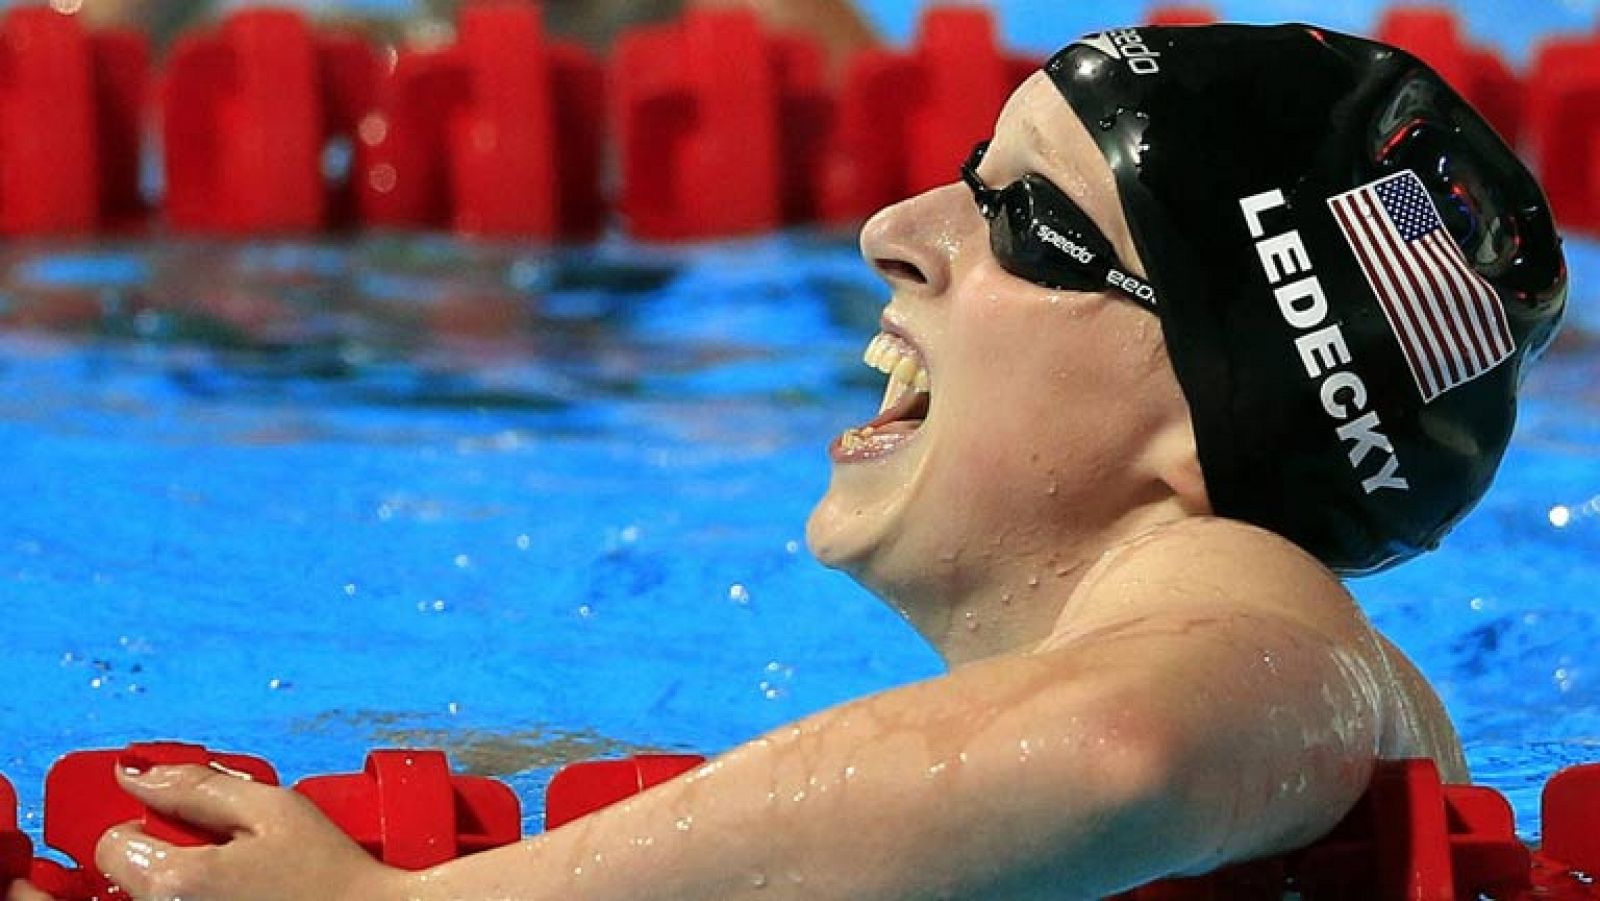 Vuelve a ver la final íntegra de 1500 libre femenino de los Mundiales de Natación de Barcelona, en la que la estadounidense Katie Ledecky ha nadado de manera casi sobrehumana, y ha pulverizado el récord del mundo, rebajándolo en más de 6 segundos. La